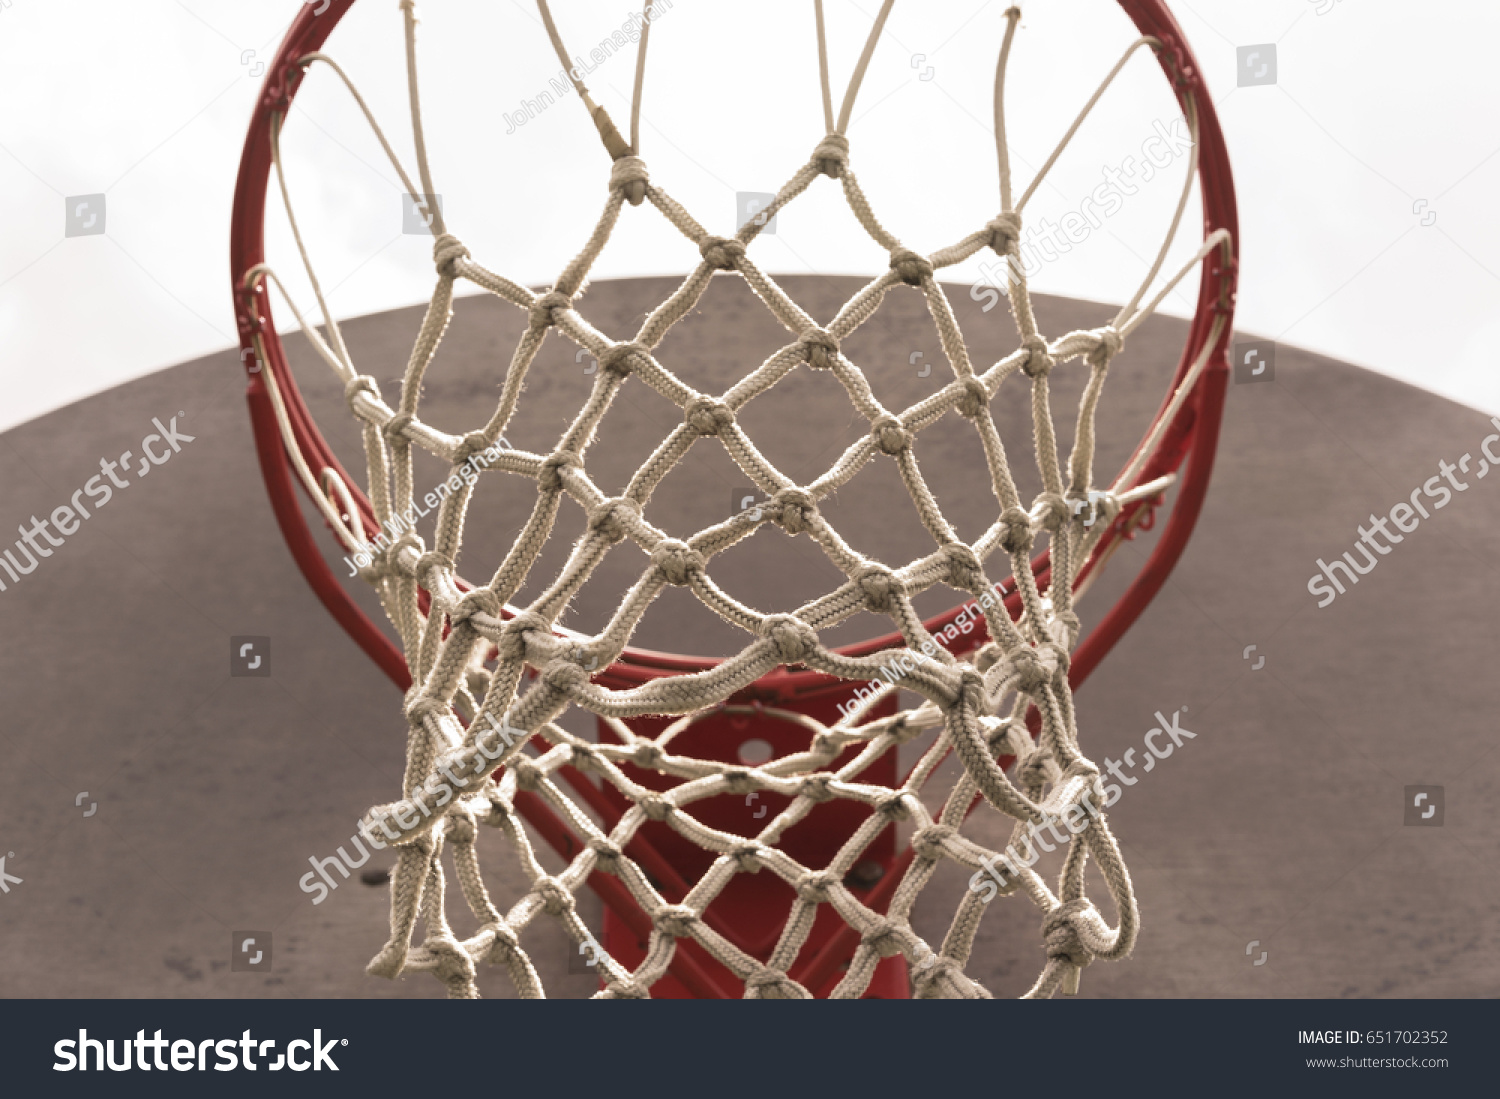 Outdoor Baskeball Hoop Net Close Up #651702352